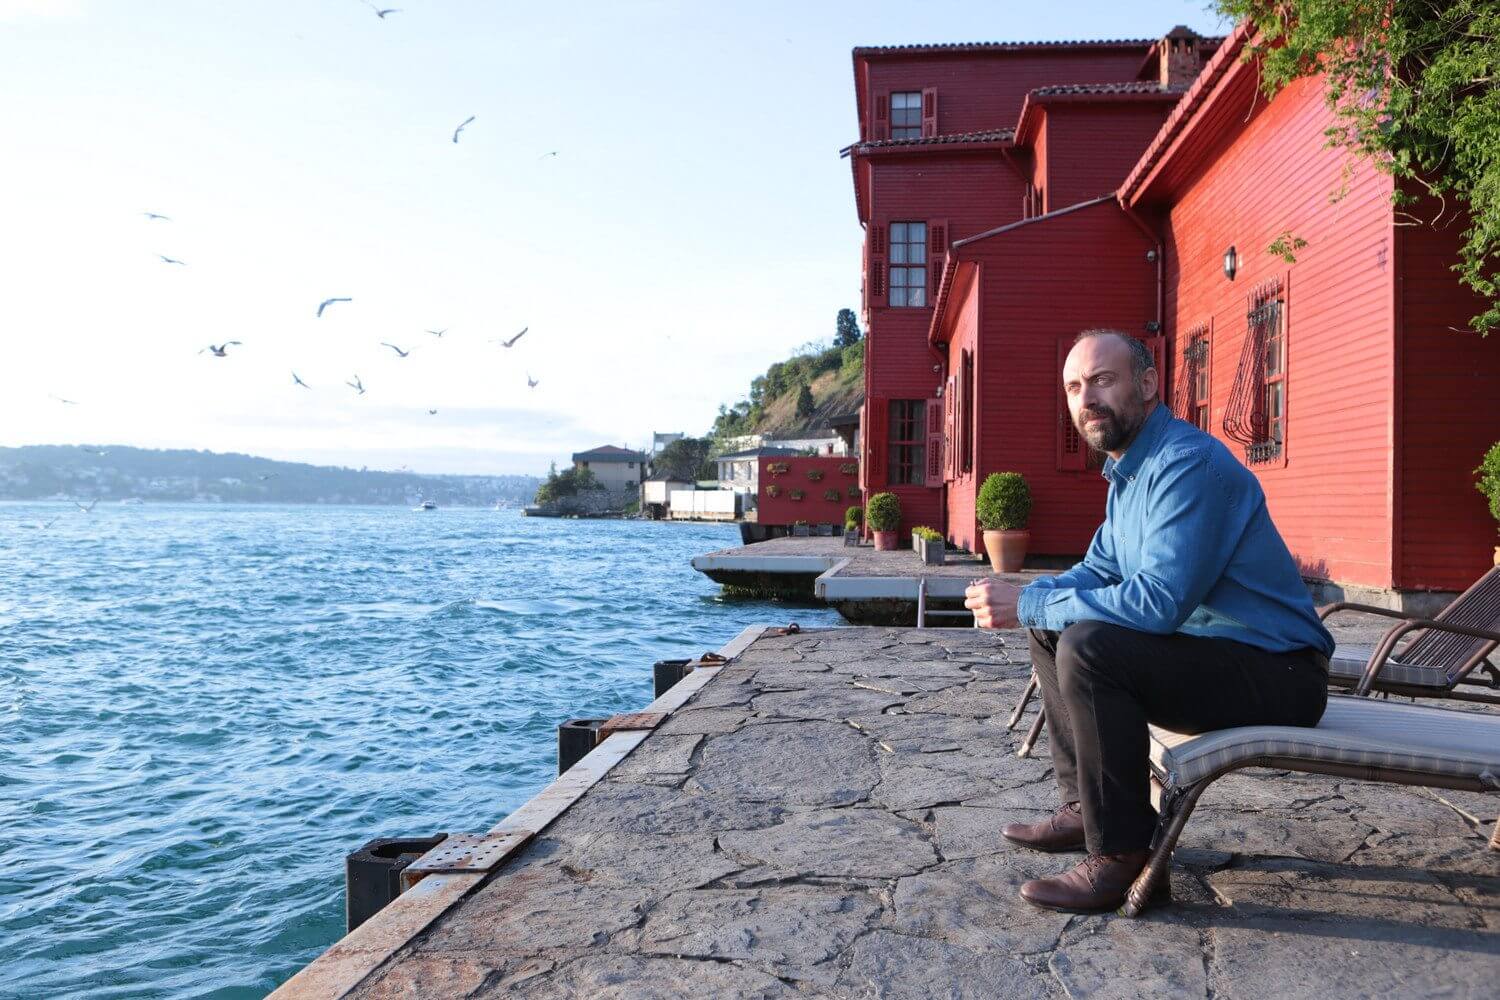 Misterioso e sensuale, Rosso Istanbul di Ozpetek è un grande enigma amoroso - Rosso Istanbul 4 - Gay.it